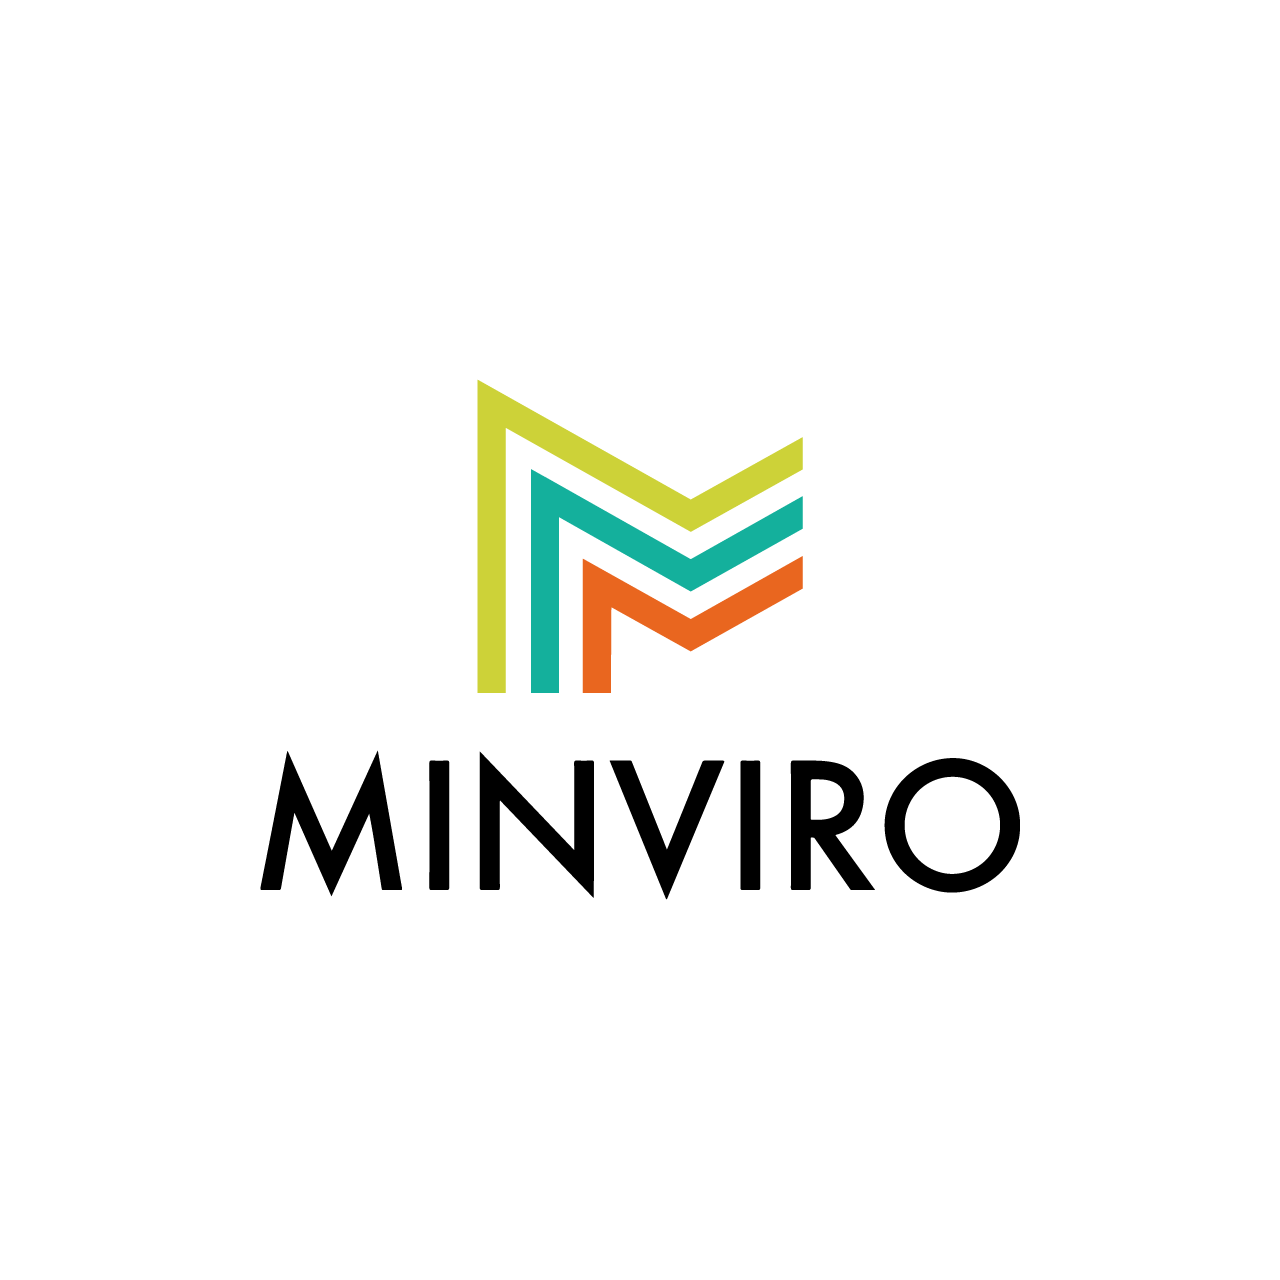 Minviro logo